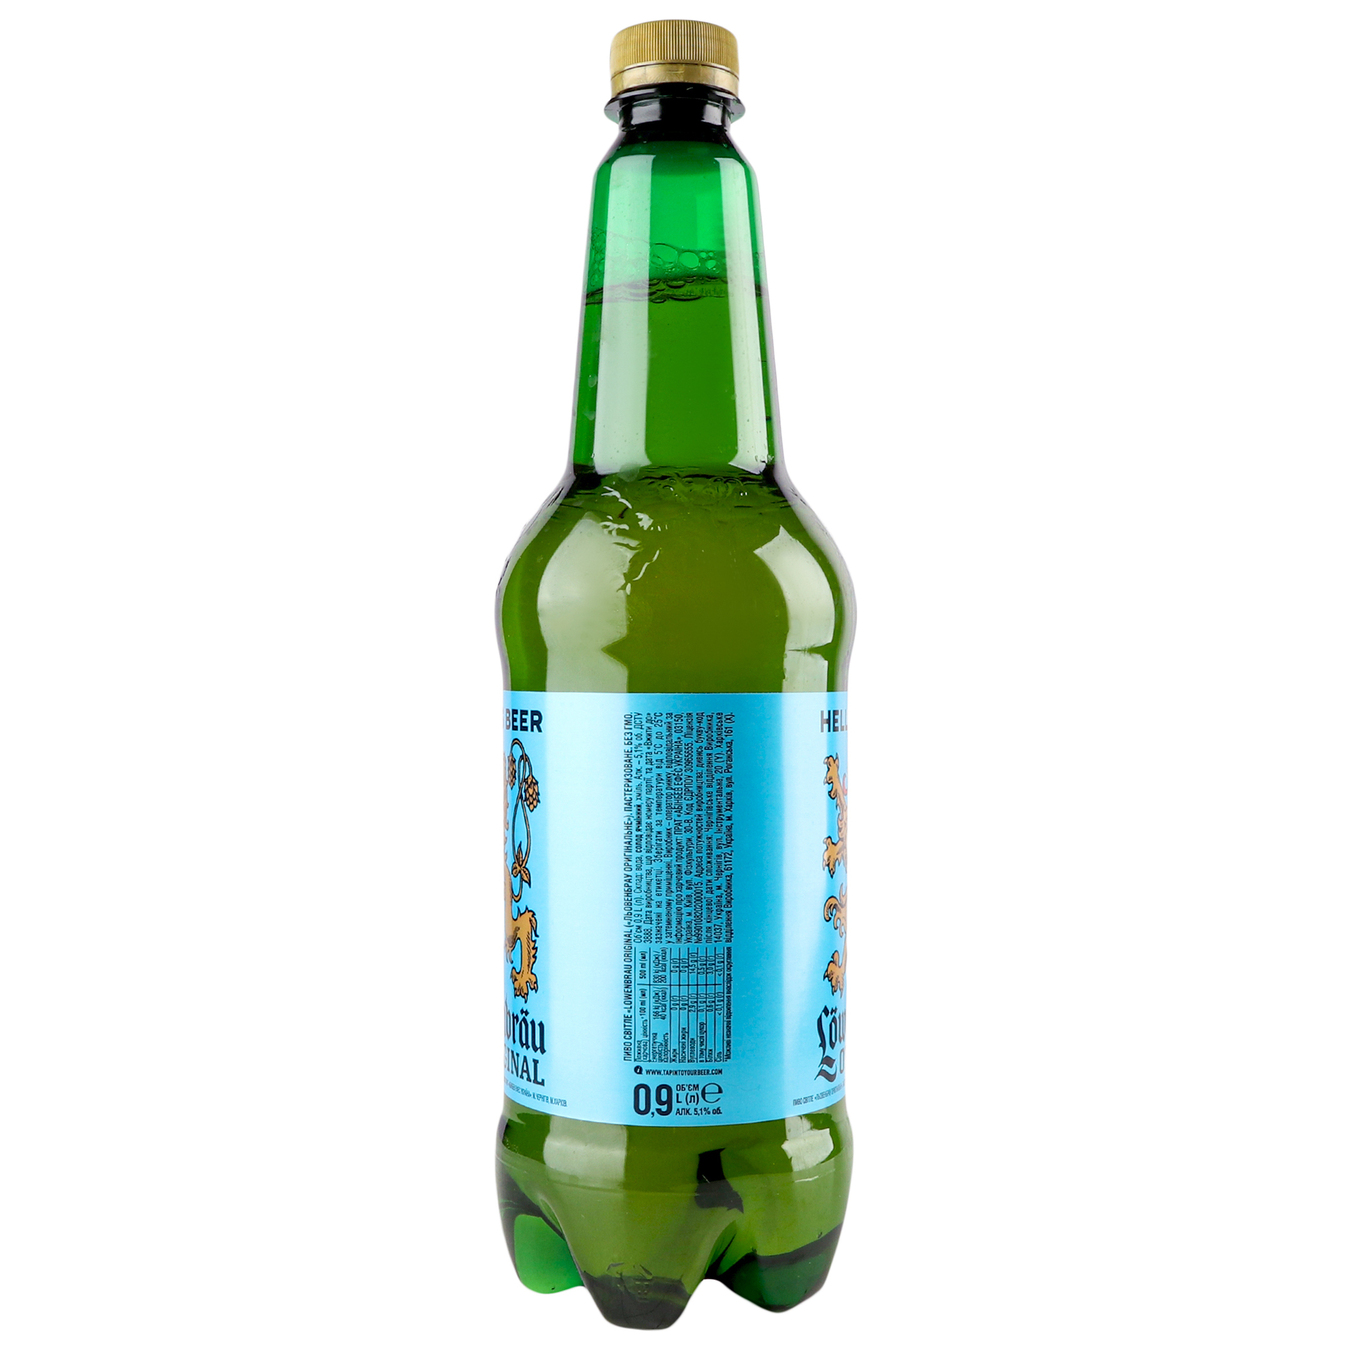 Пиво Lowenbrau Original пастеризованное светлое 5,1% 0,9л 2